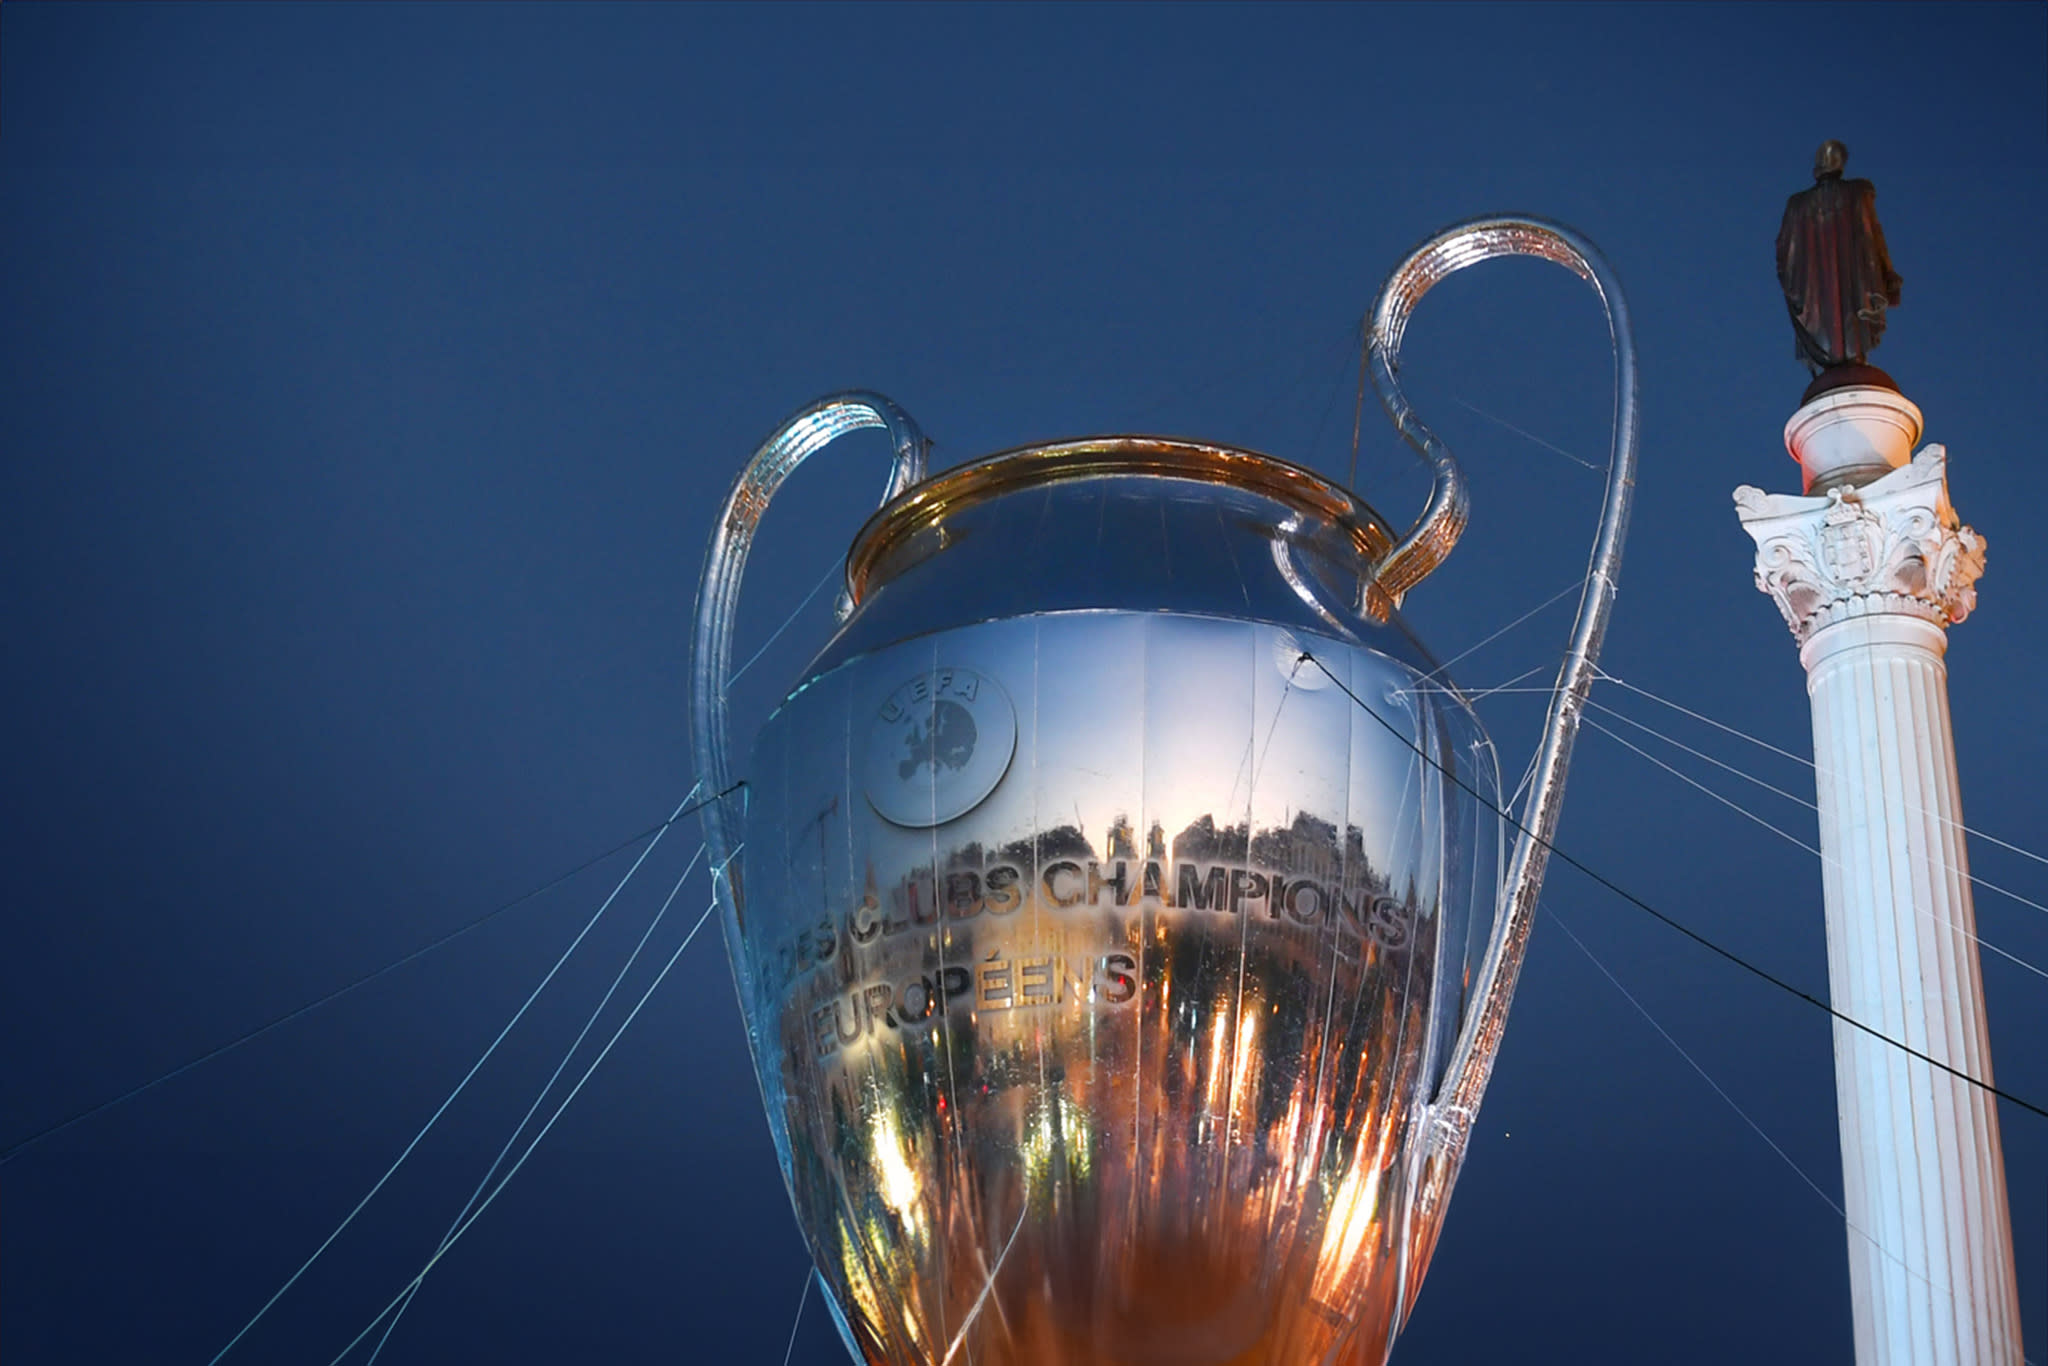 Pokalen i UEFA Champions League är mycket åtråvärd för Europas storklubbar. 